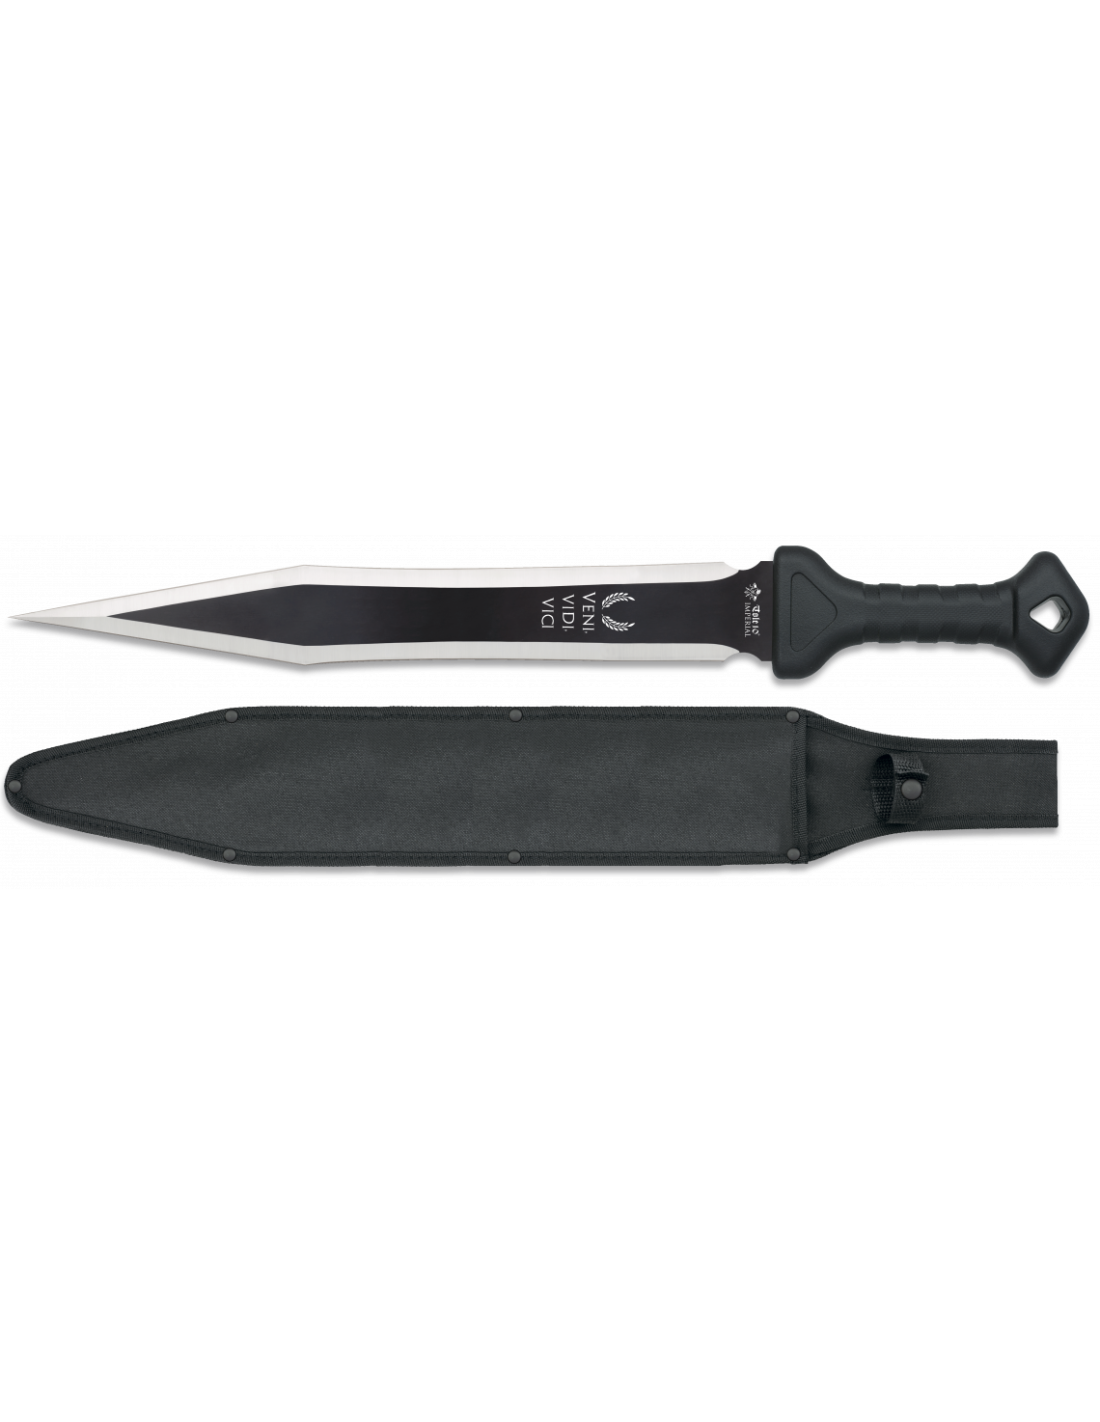 venta online cuchillo black bear y comprar por internet machete de campo  black bear albainox